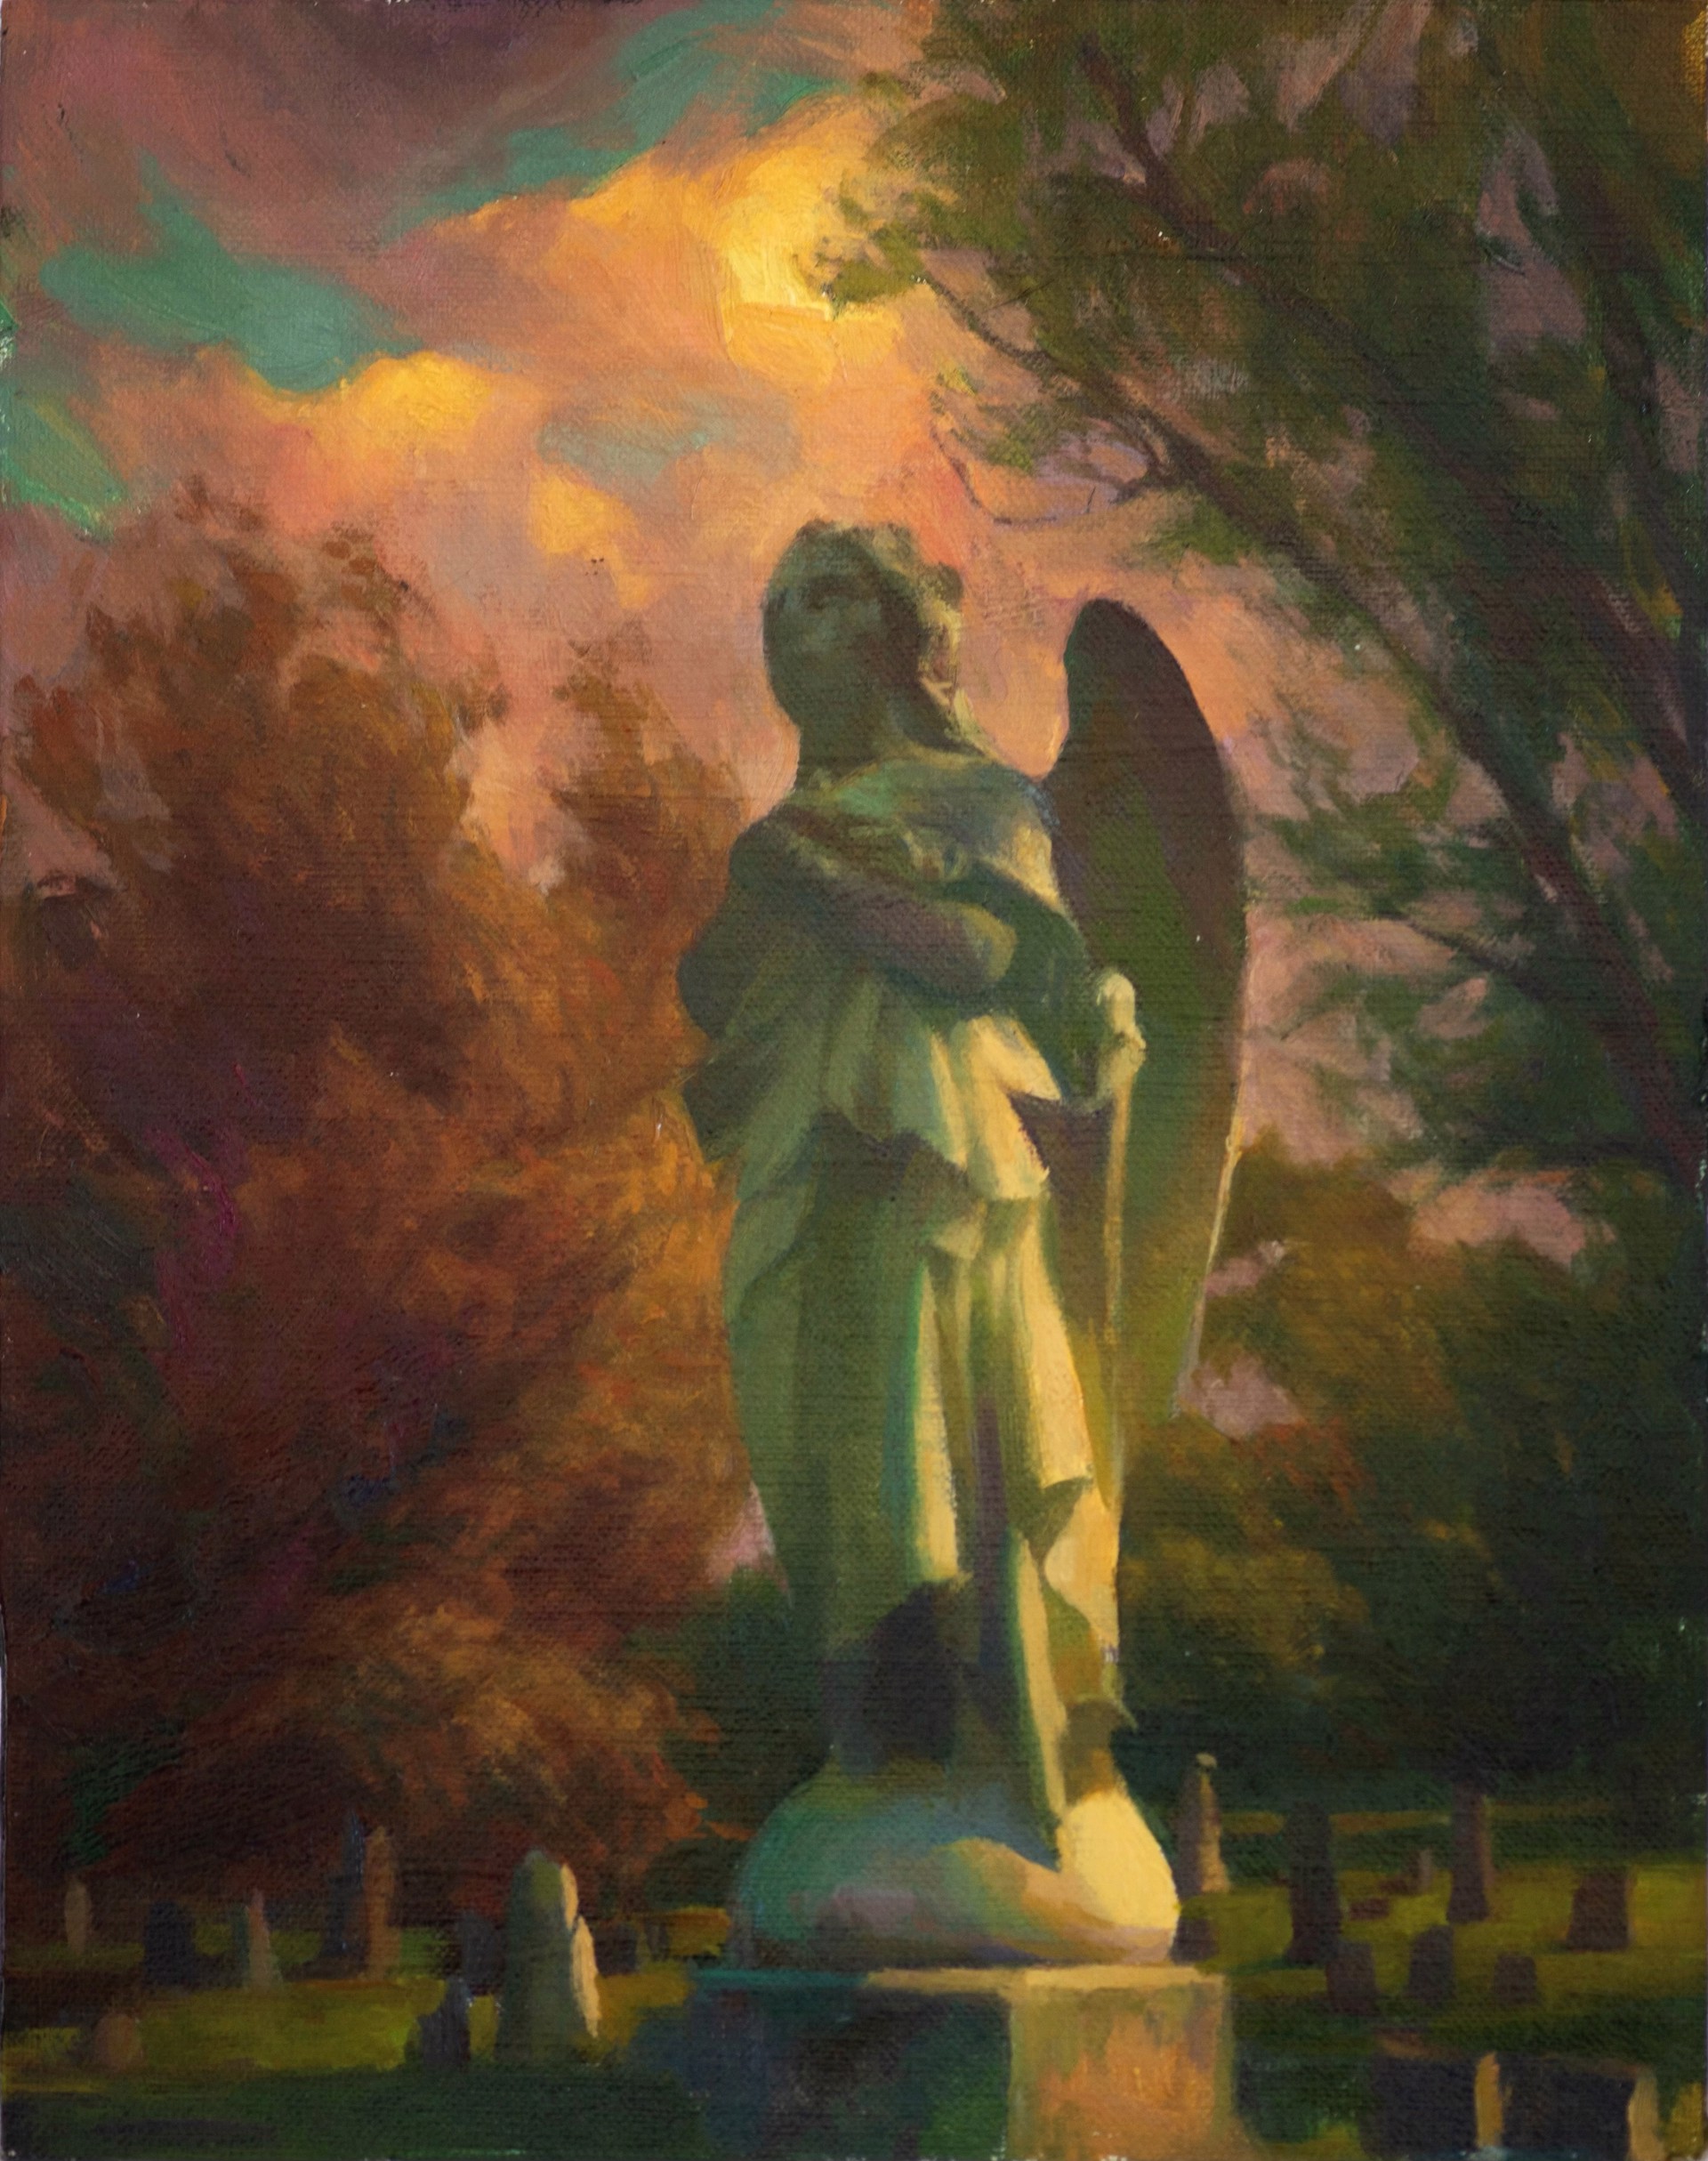 Allegheny Cemetery by Adrienne Stein